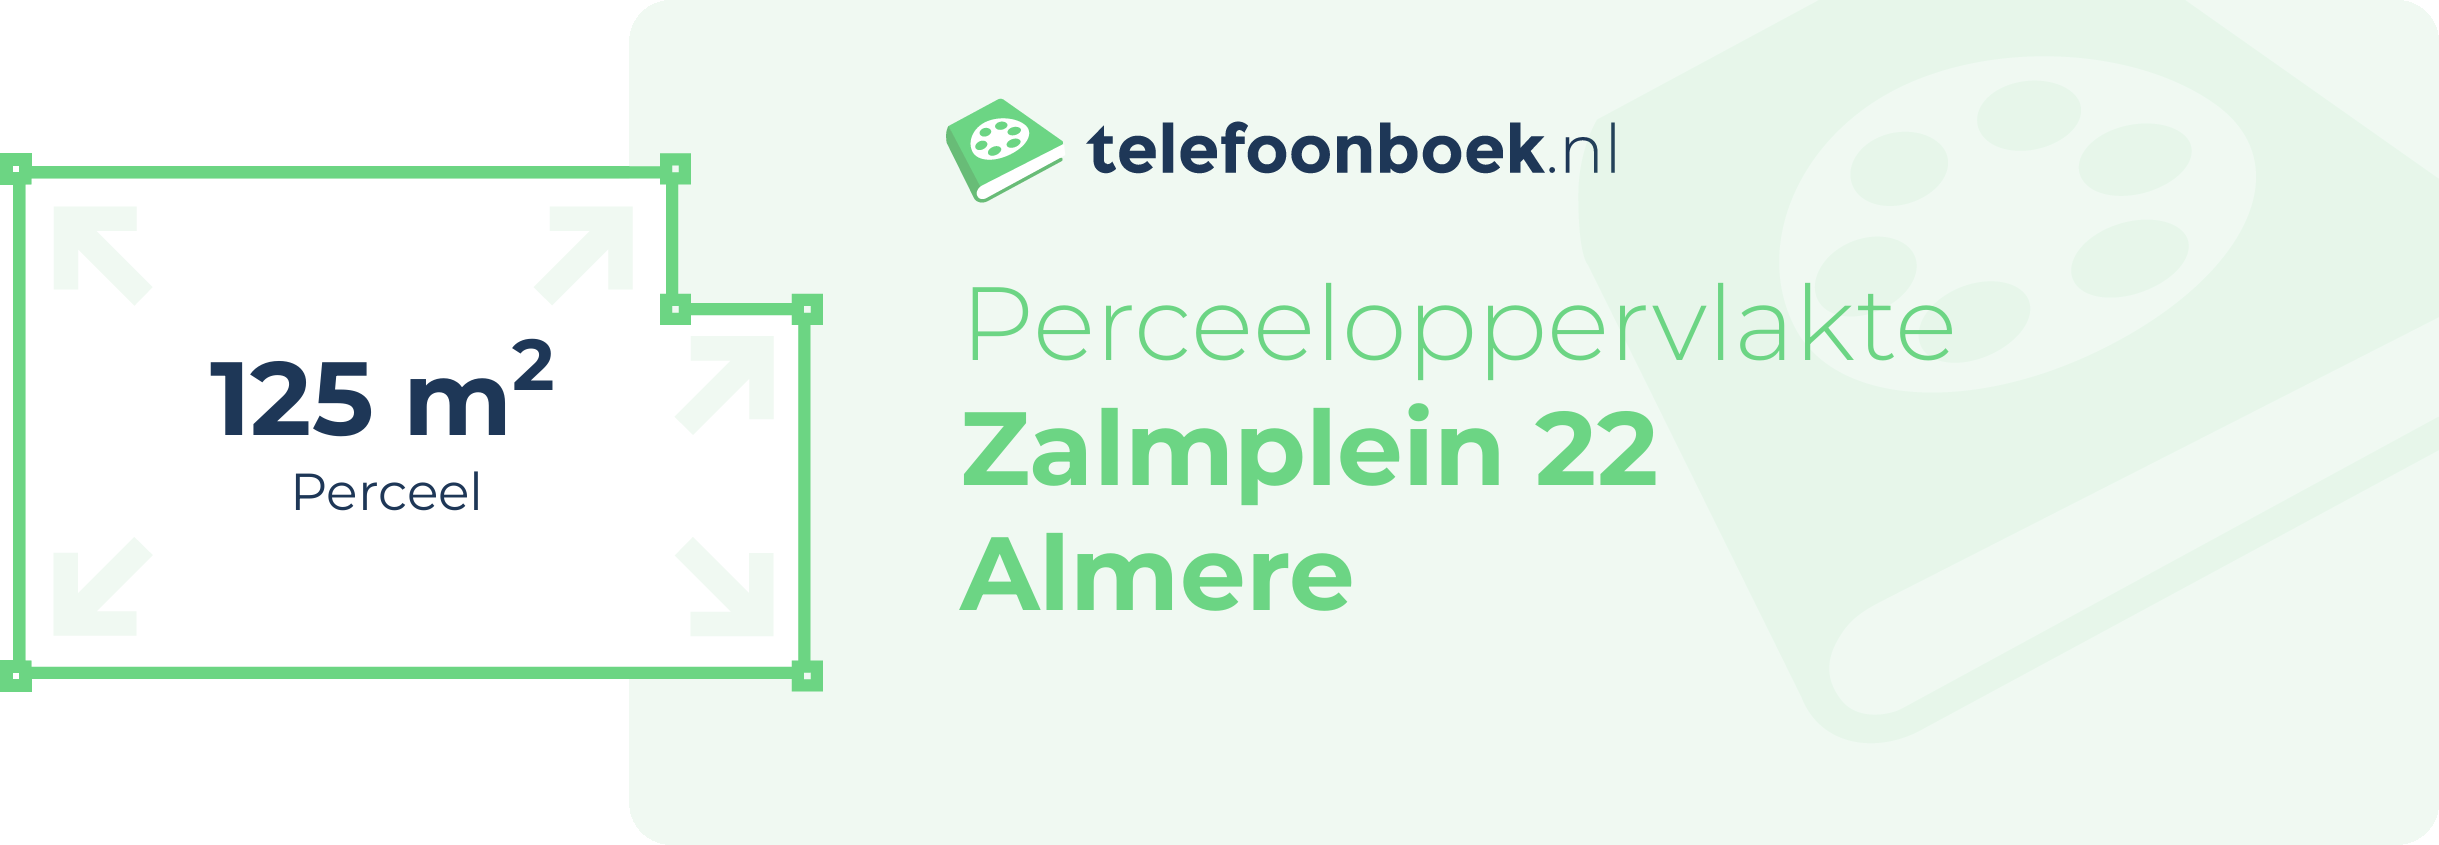 Perceeloppervlakte Zalmplein 22 Almere